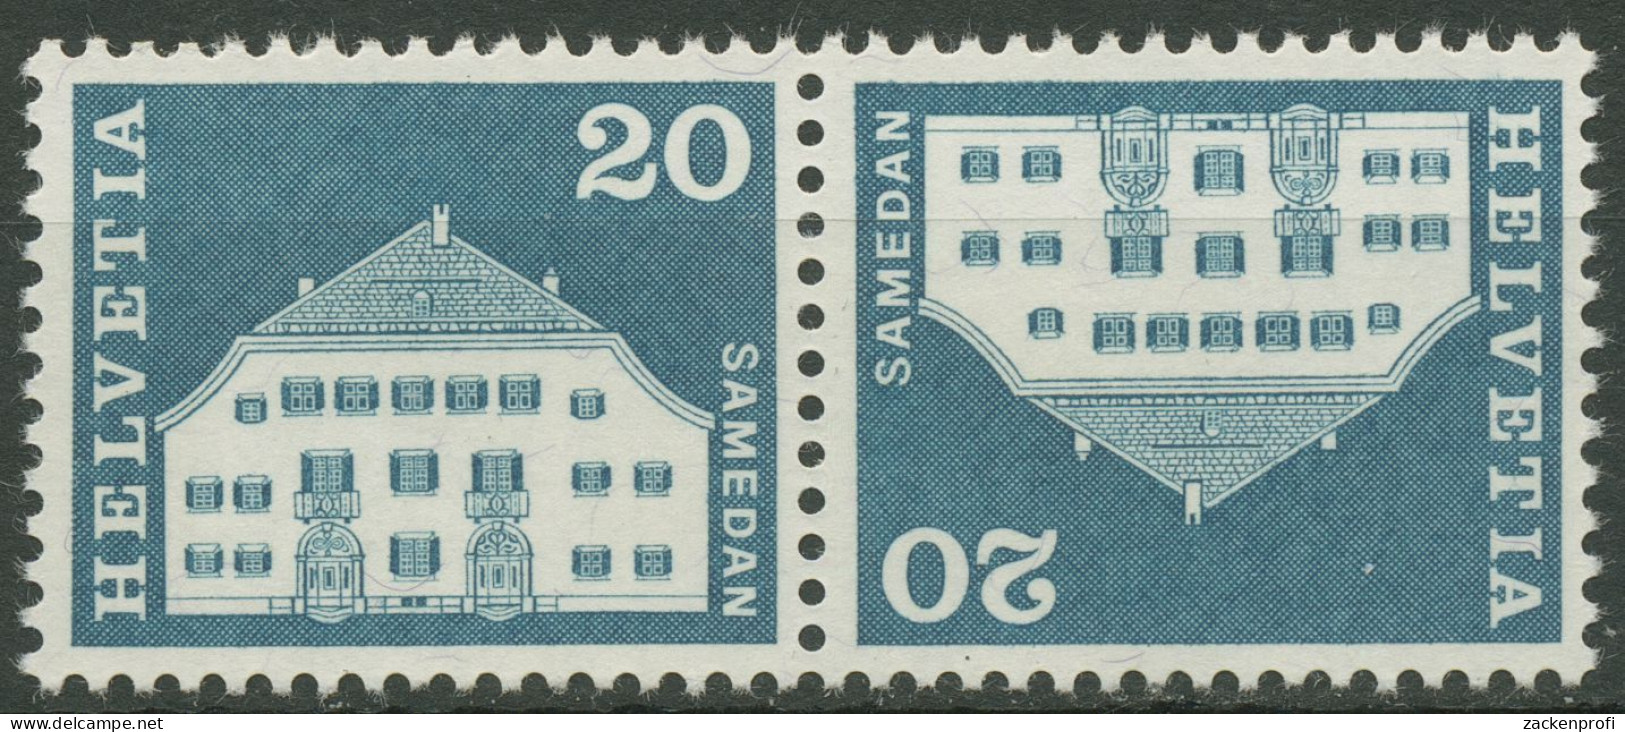 Schweiz 1968 Bauwerke Planta-Haus Samedan 881 Kehrdruck K 51 Postfrisch - Ungebraucht